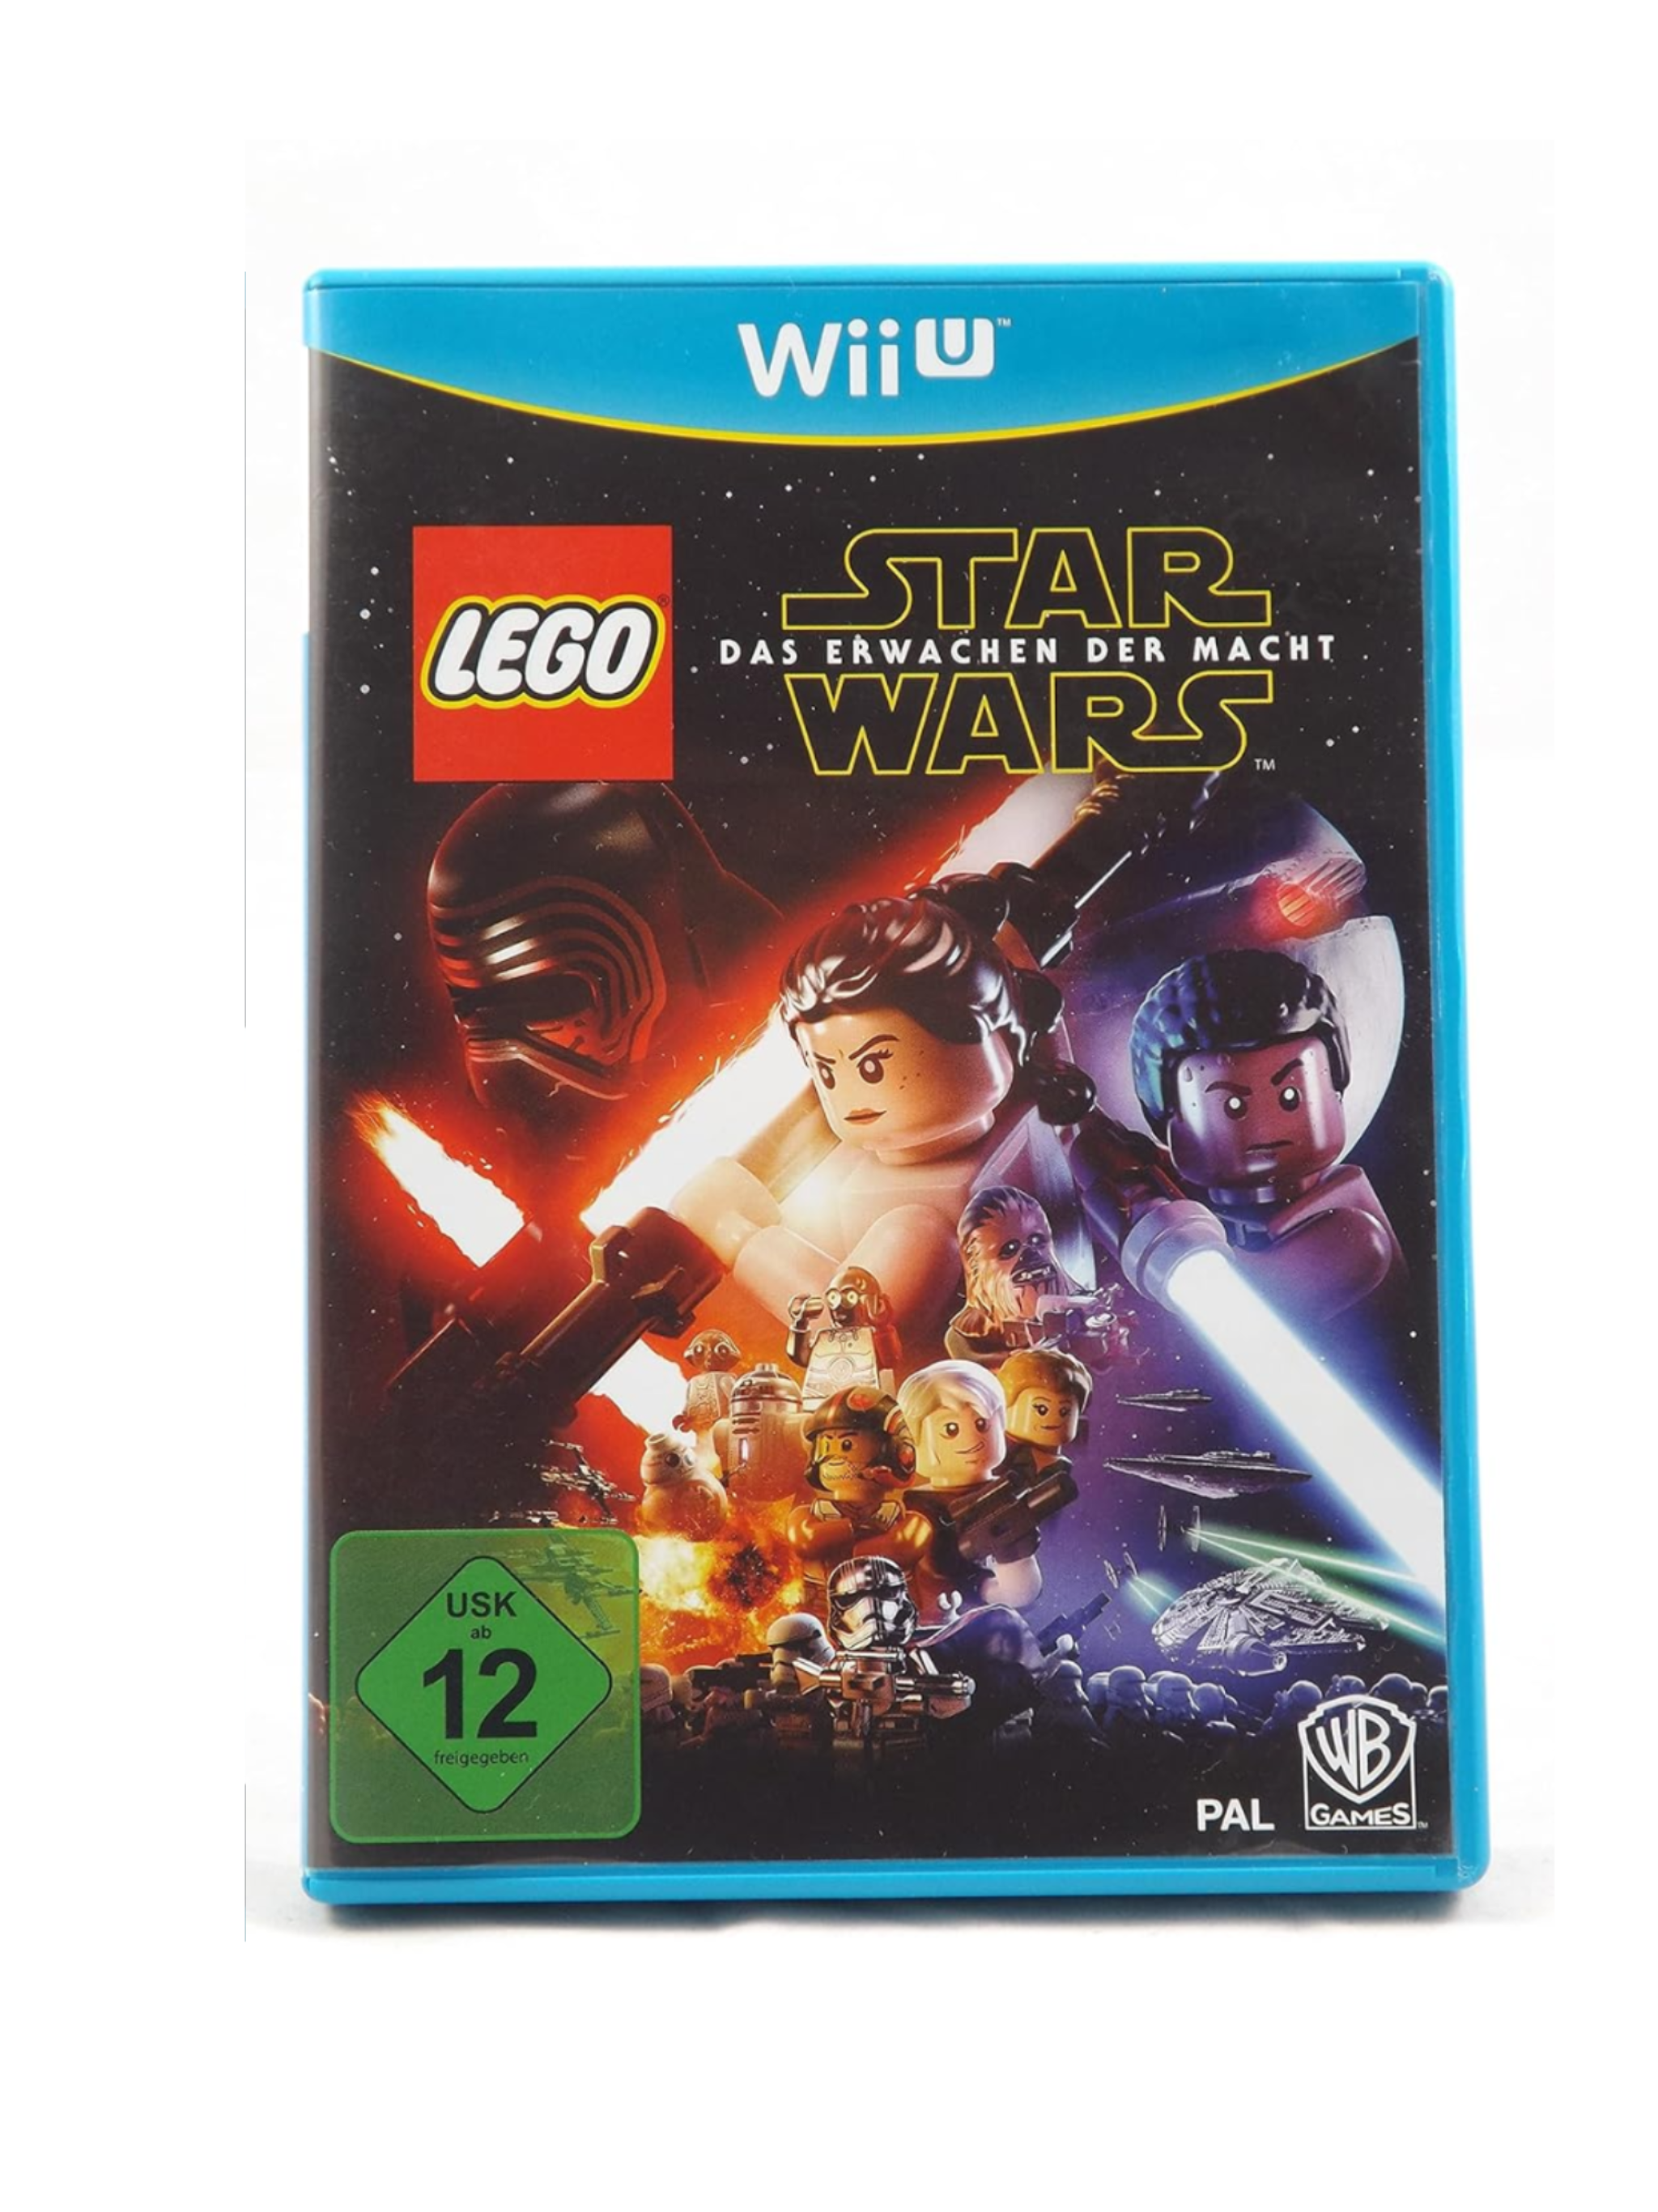 Star Wars: Das Erwachen der Macht Wii U